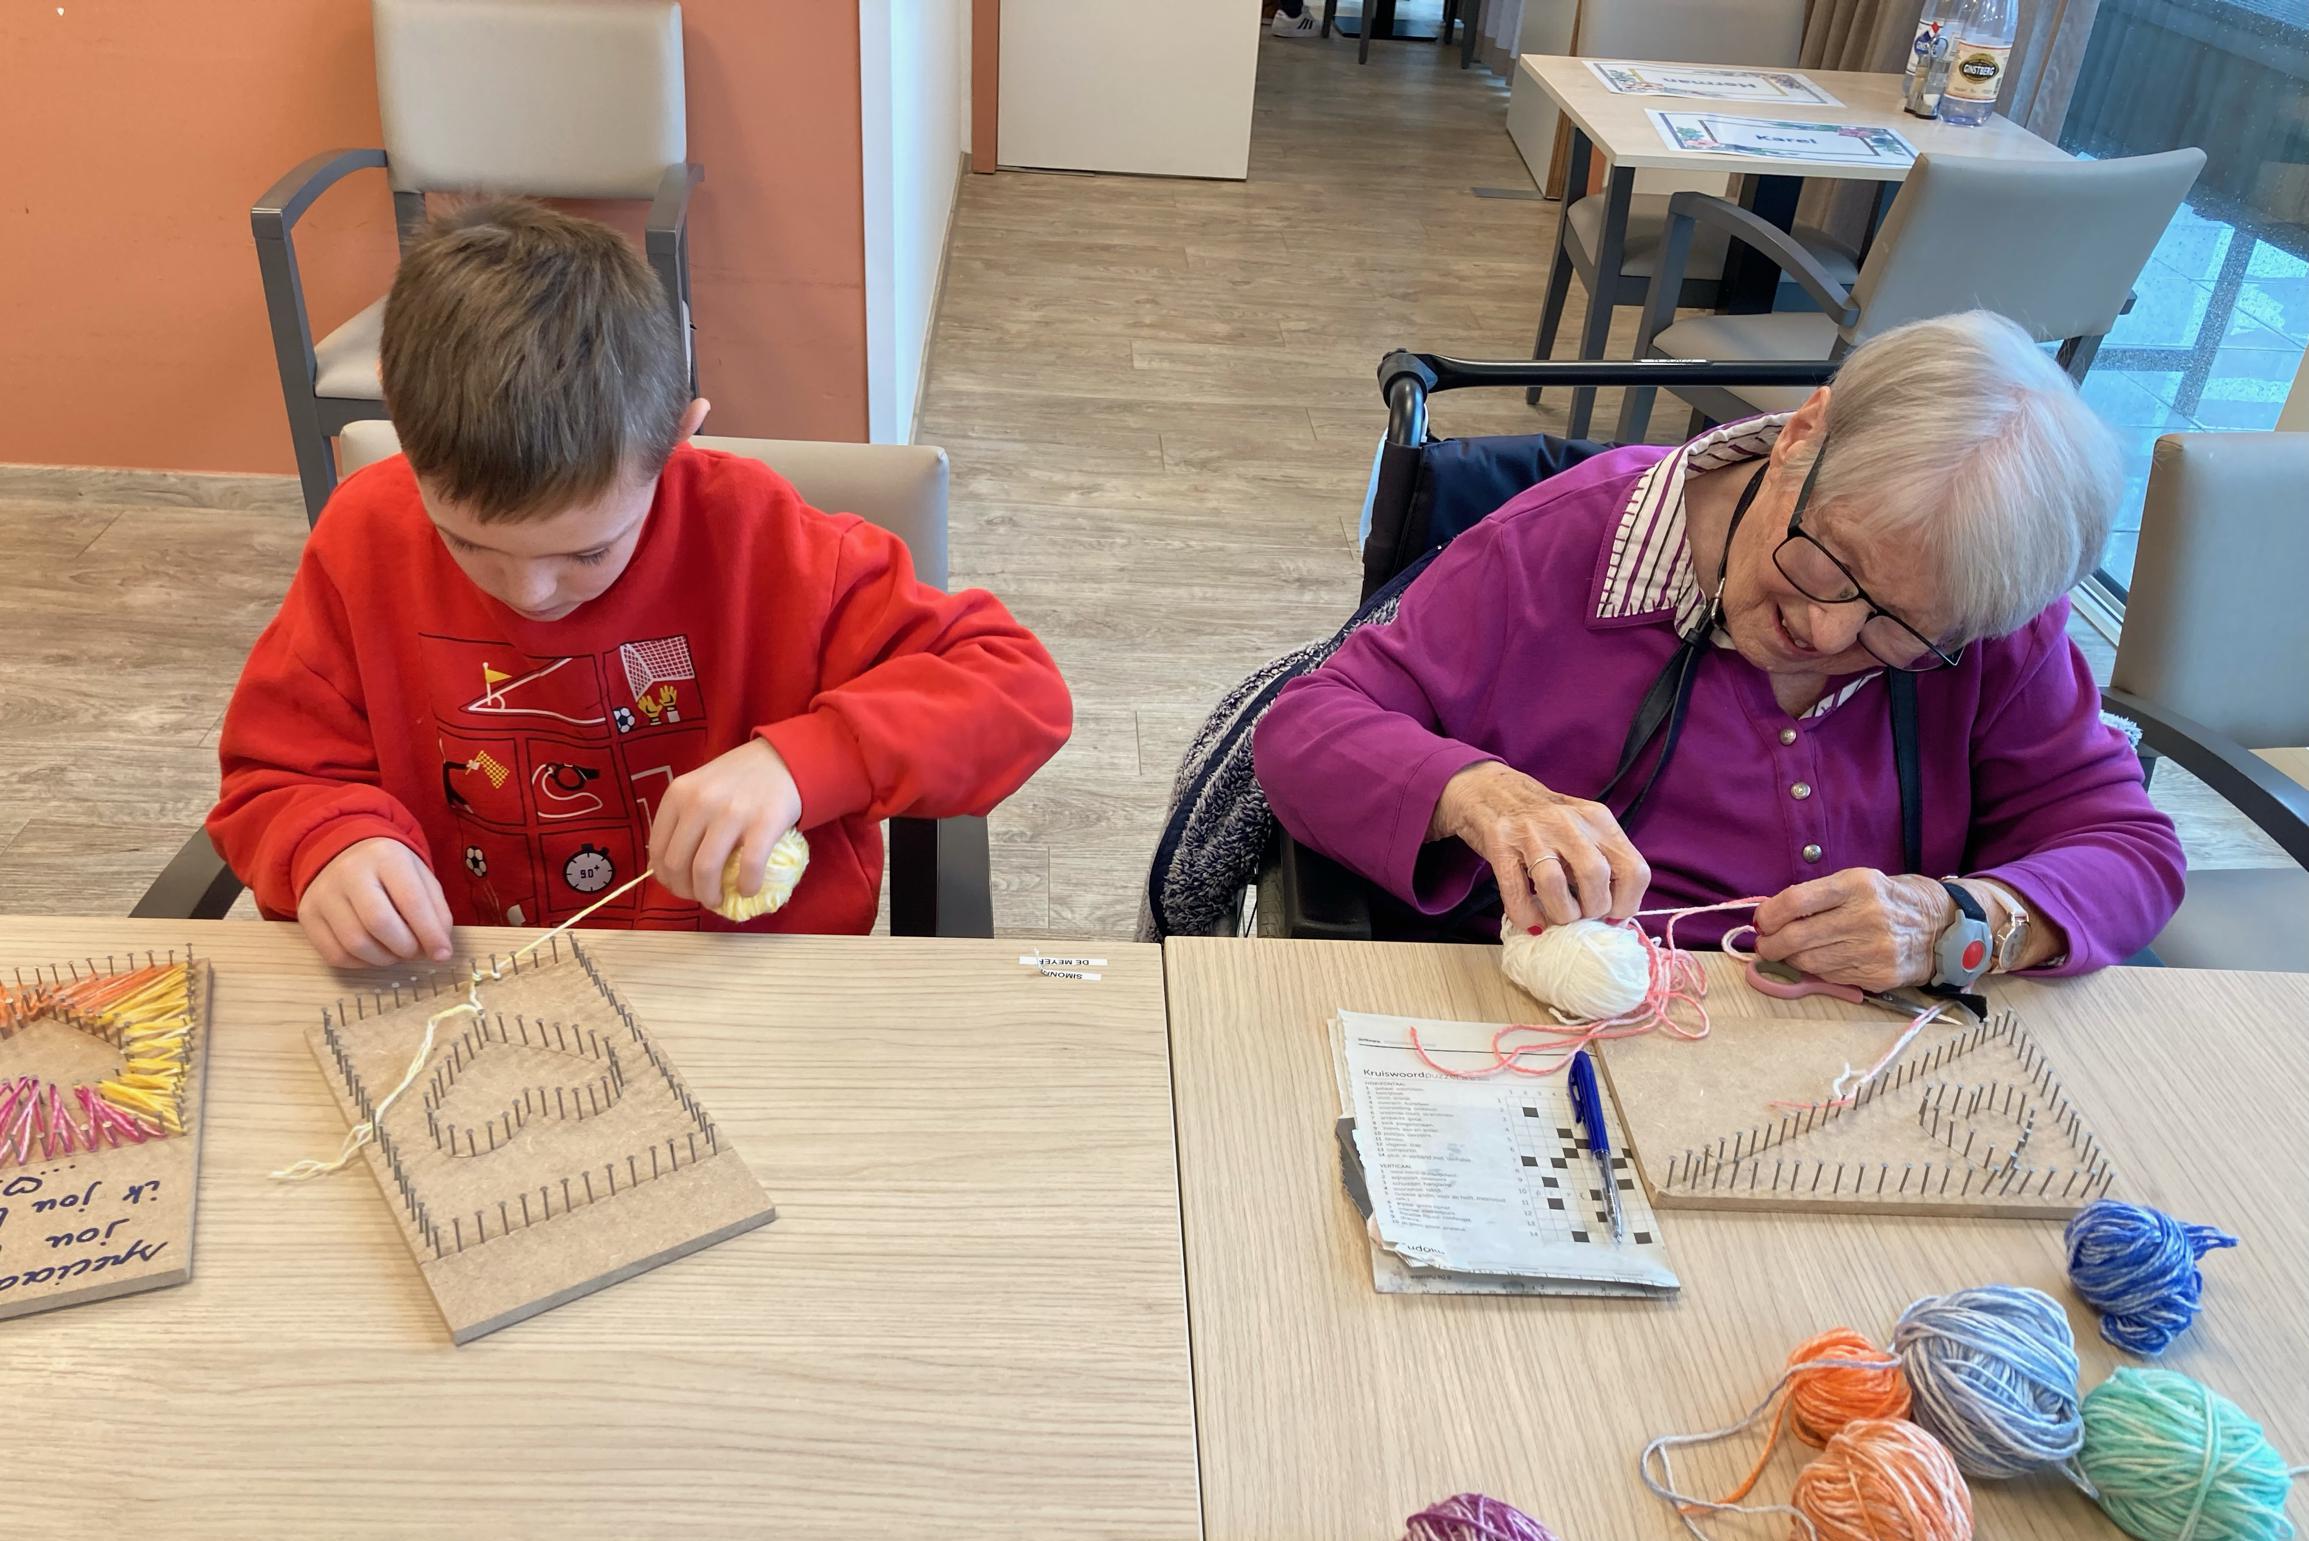 Leerlingen De Zonnebergen bezoek aan en knutselen samen met bewoners | Het Nieuwsblad Mobile